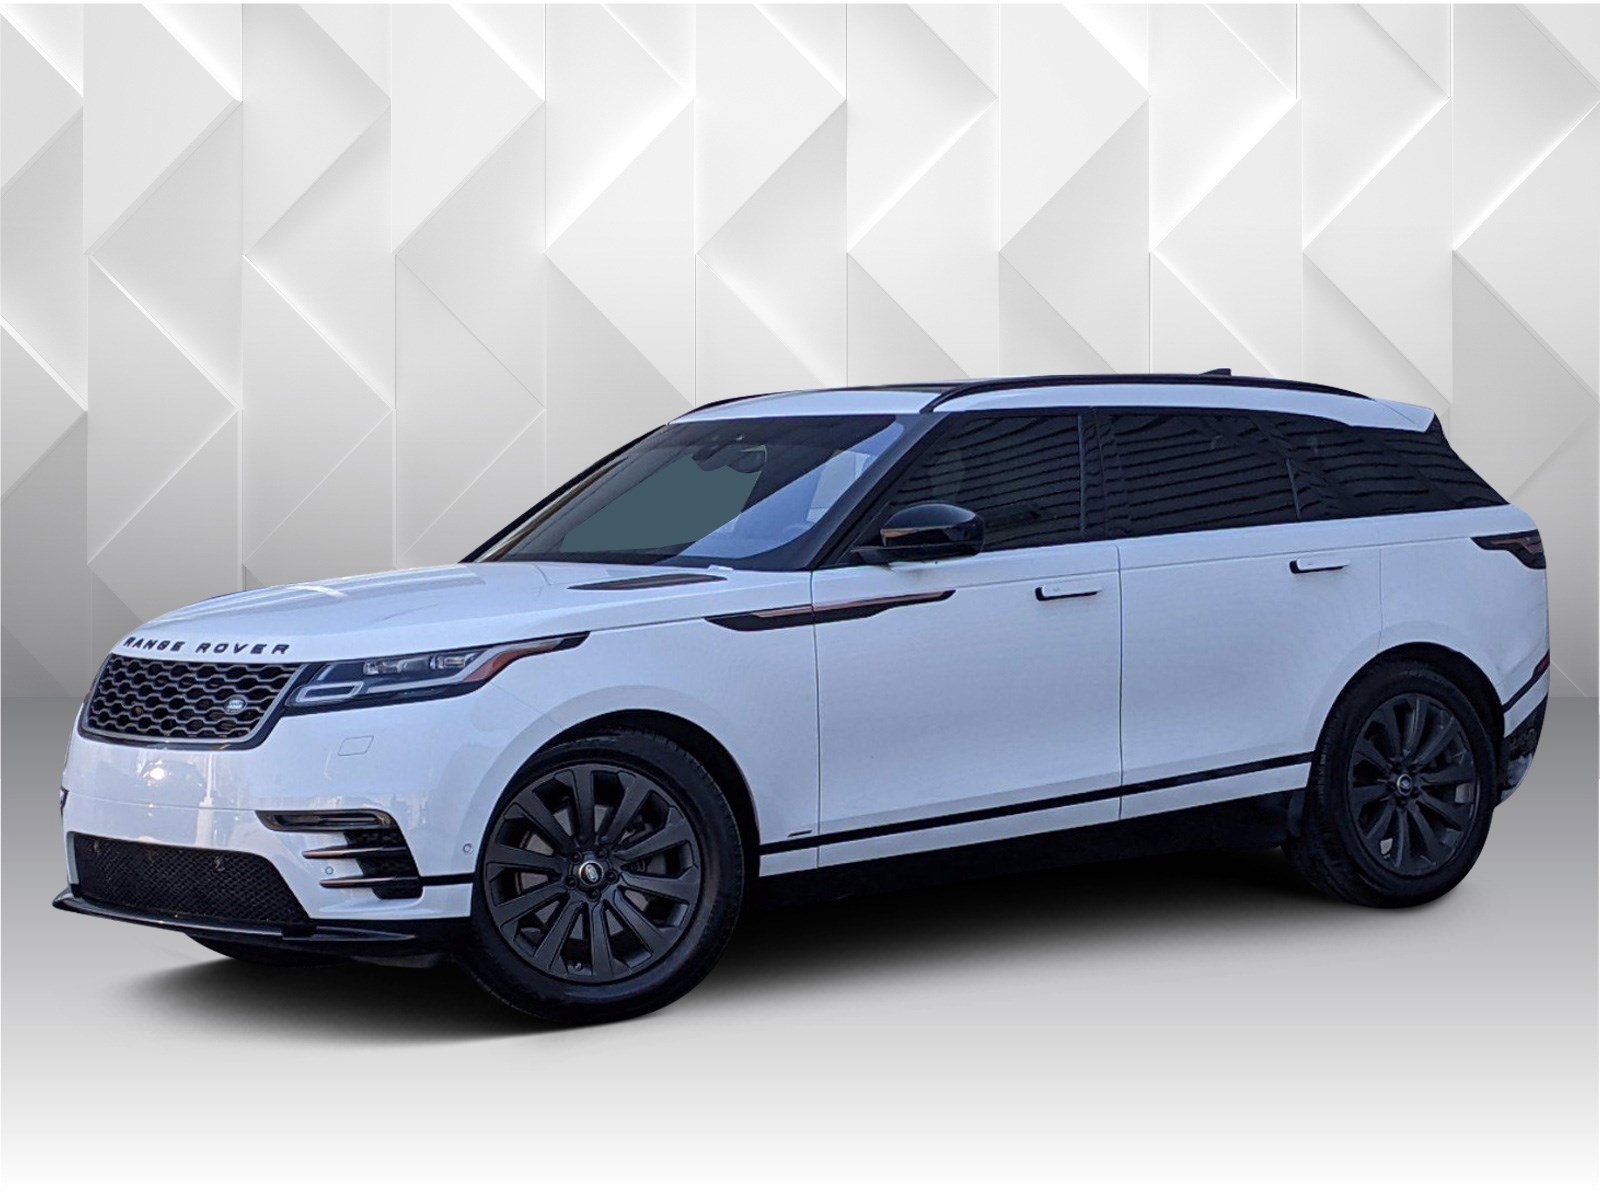 2018 Range Rover Velar R Dynamic Wallpapers